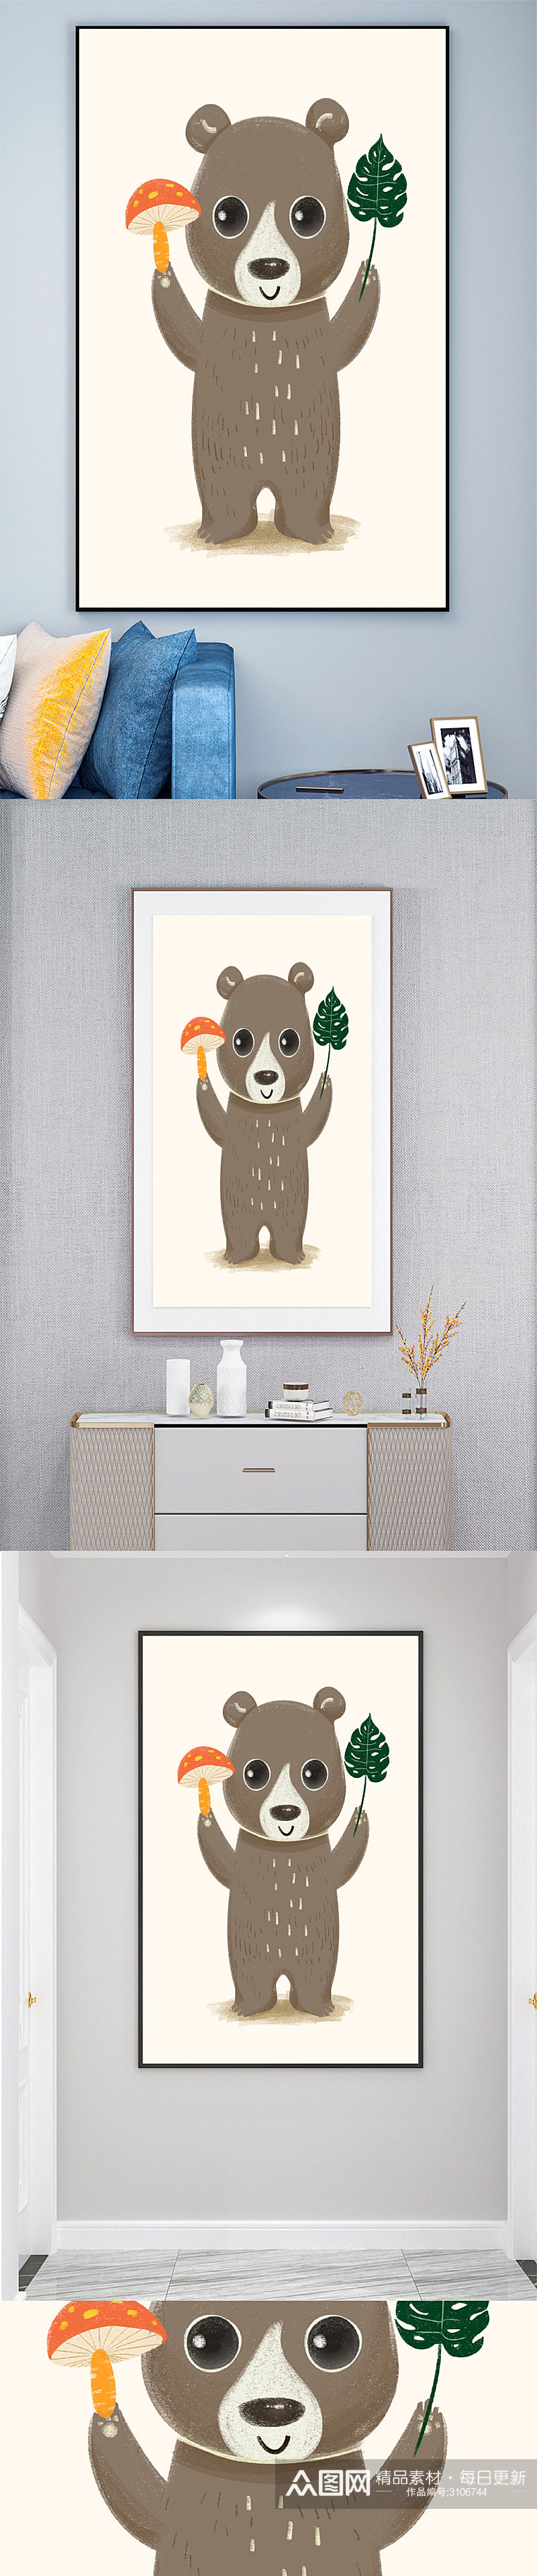 卡通动物熊壁画装饰画素材